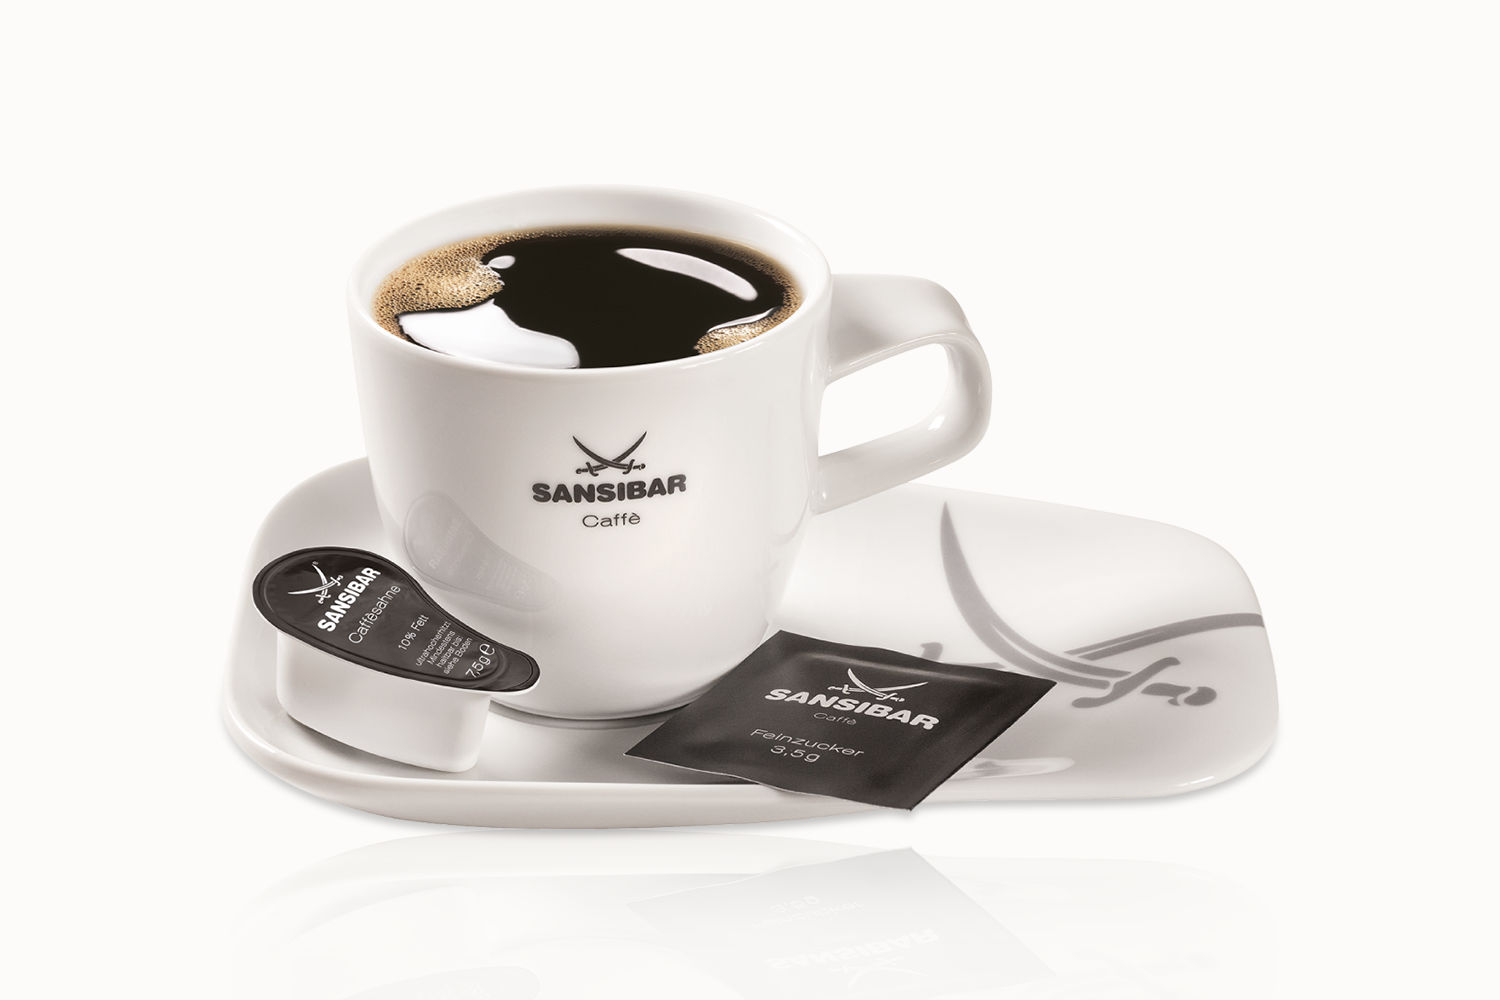 J.J. Darboven Marken – Sansibar Kaffee mit Sahne und Zucker